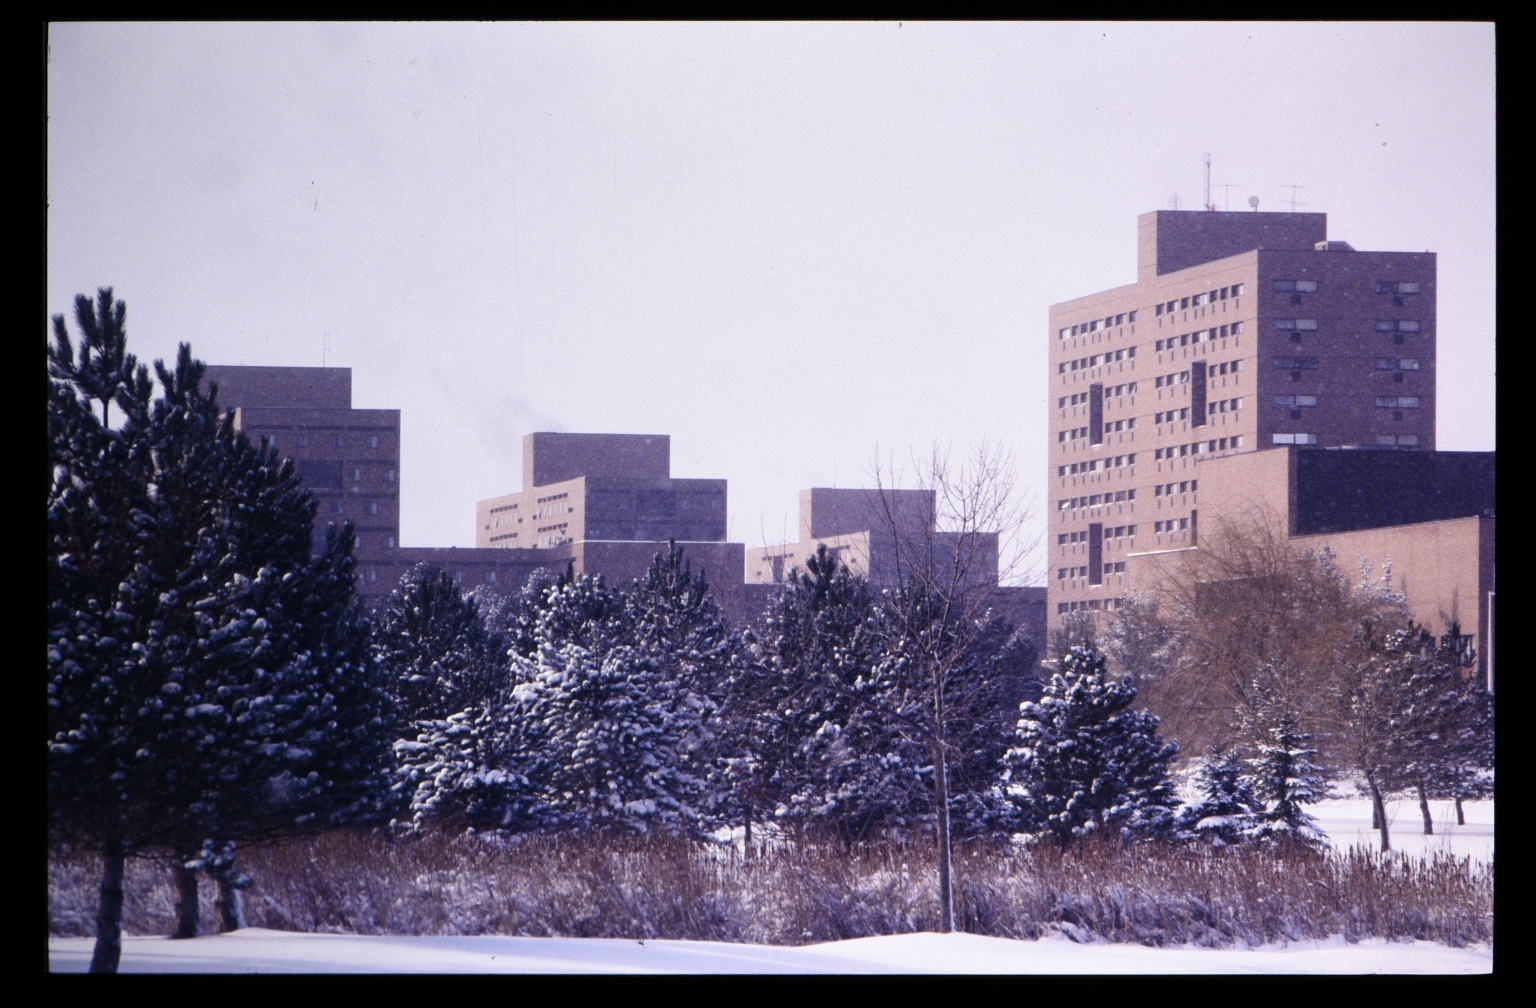 Campus buildings in winter